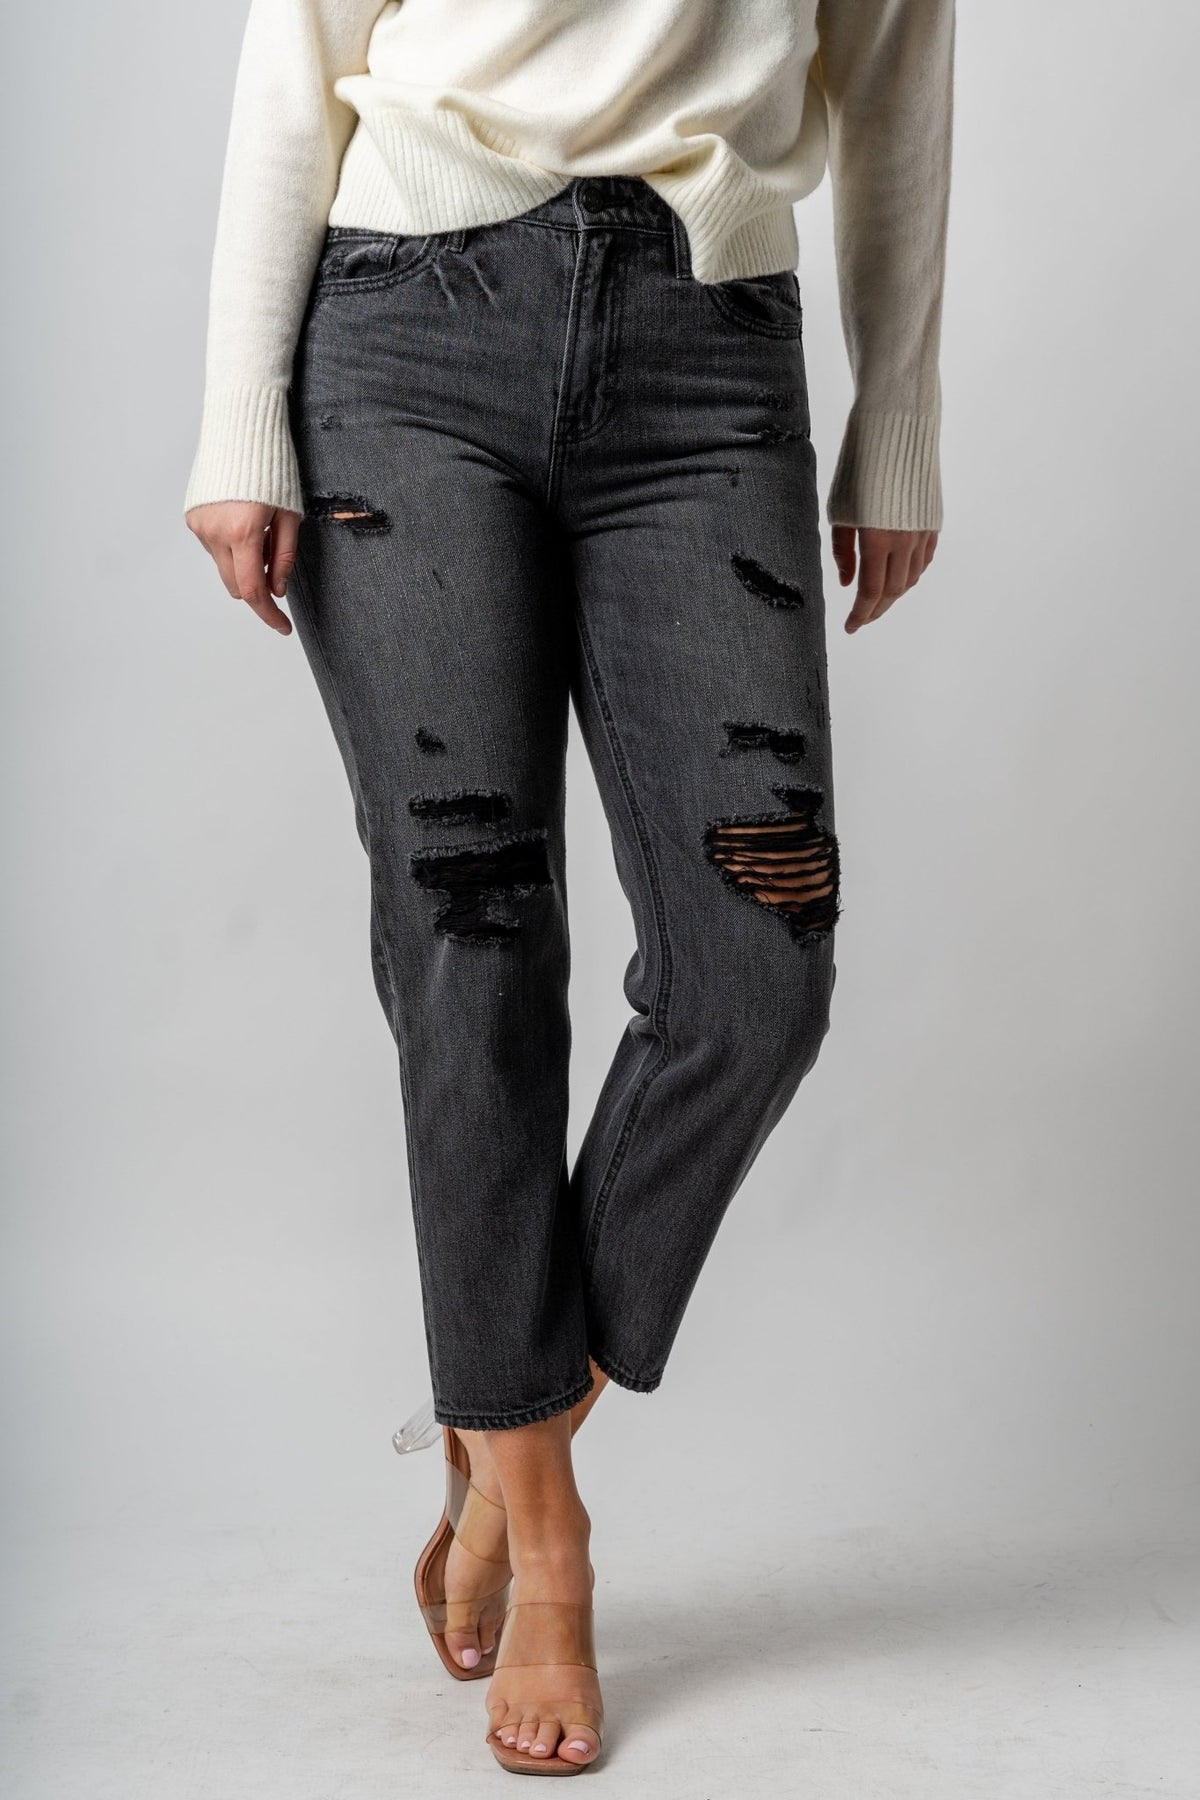 Hidden Bailey high rise boyfriend jeans charcoal | Lush Fashion Lounge: boutique women's jeans, fashion jeans for women, affordable fashion jeans, cute boutique jeans